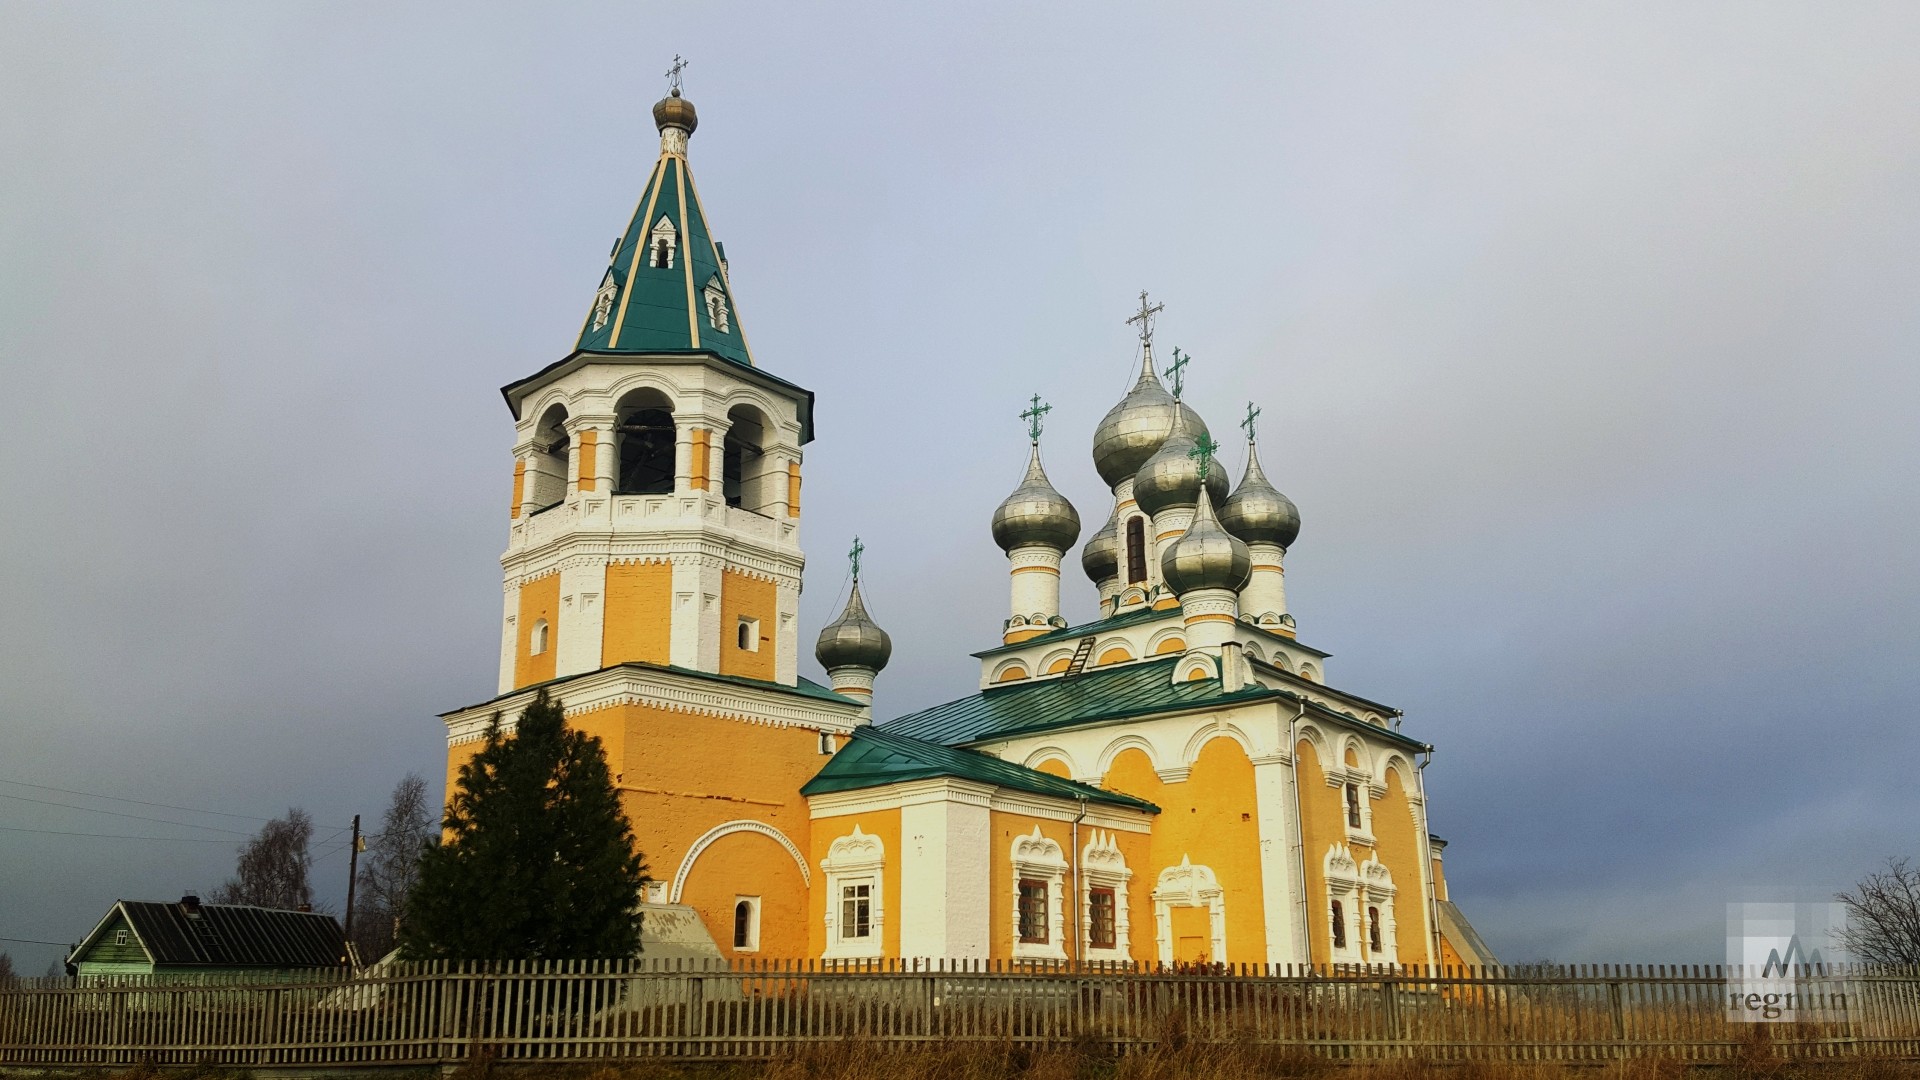 Церковь, где грамоте училась и учила сына мать Михаила Ломоносова